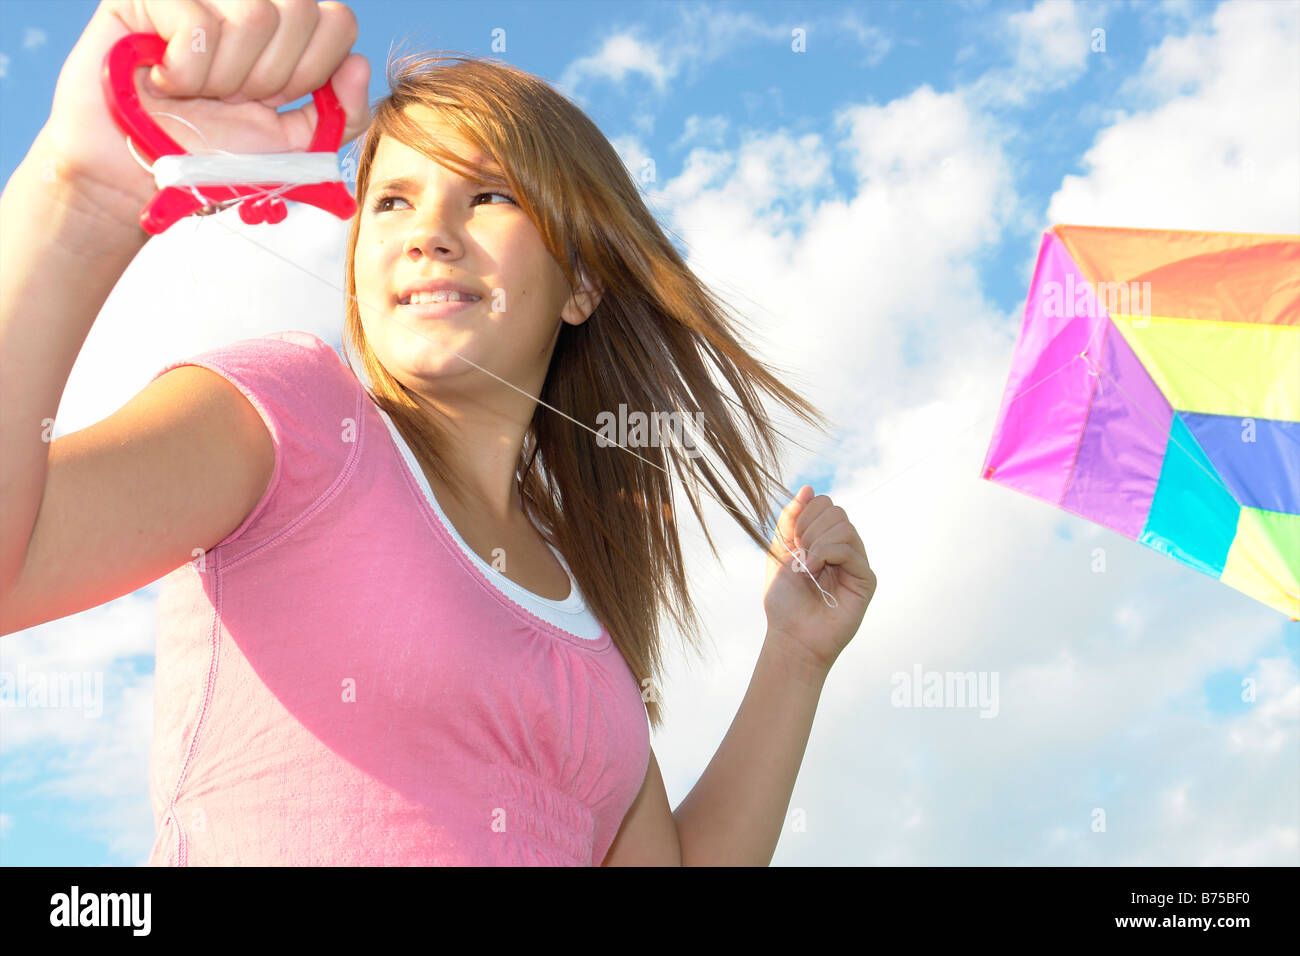 Thirteen year old girl with kite, Winnipeg, Canada Stock Photo